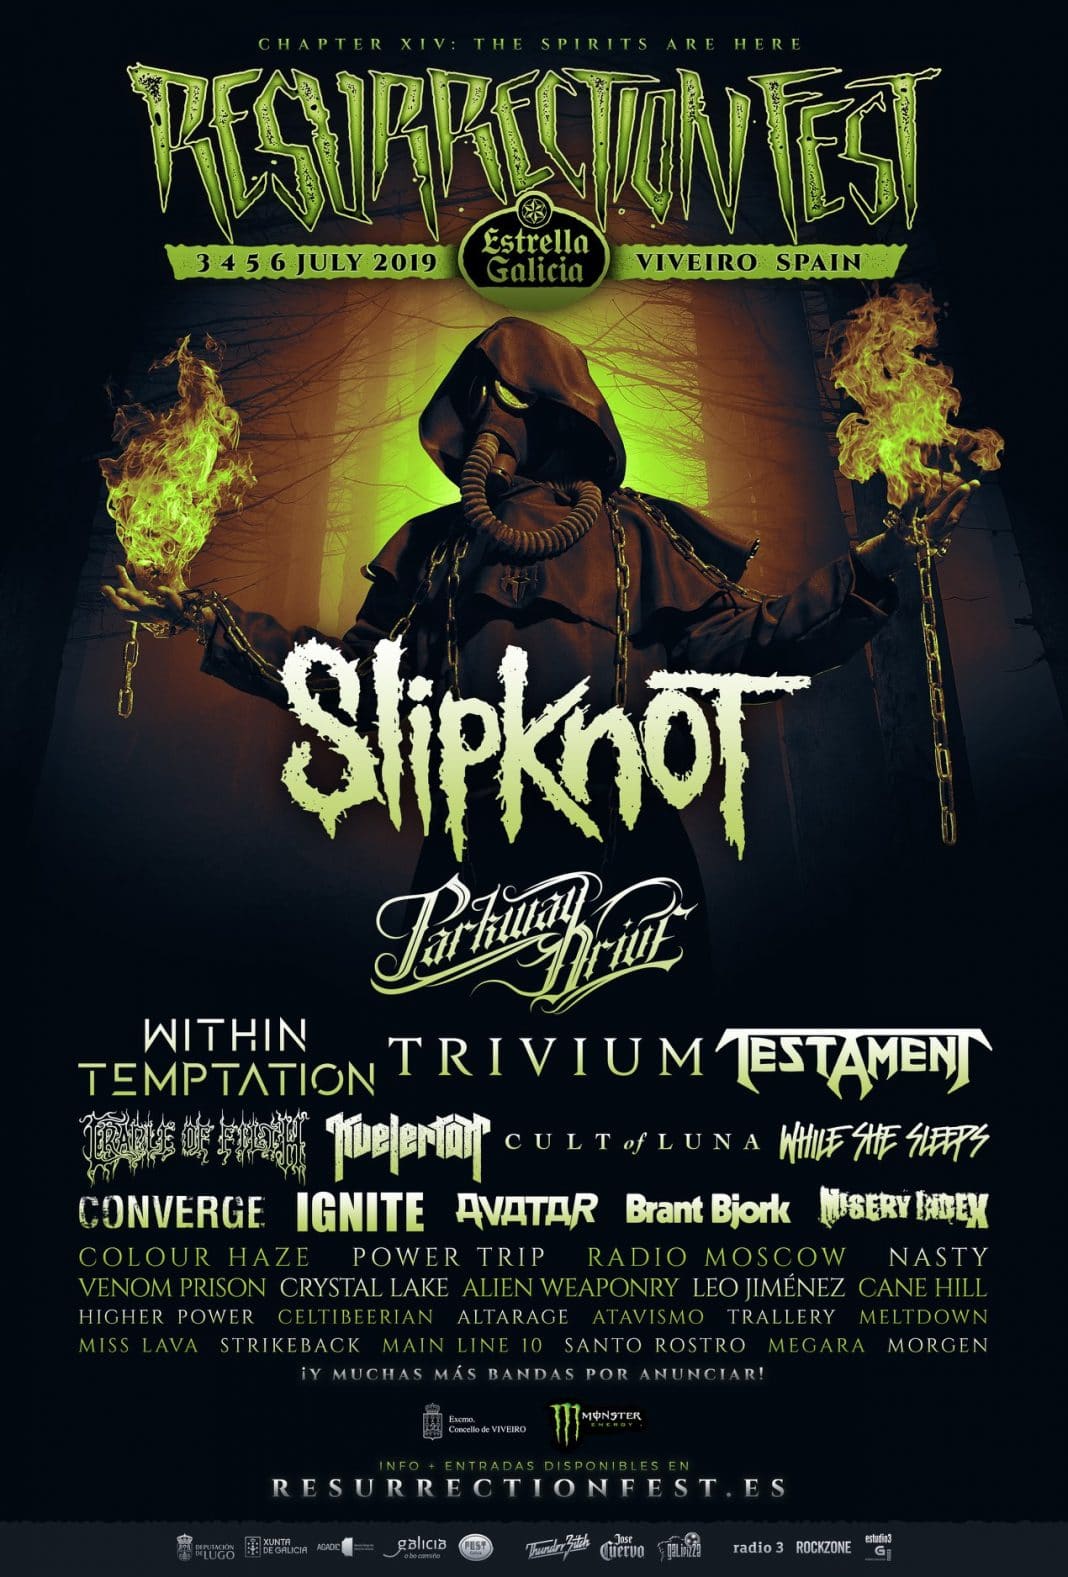 Slipknot encabezará el Resurrection Fest 2019